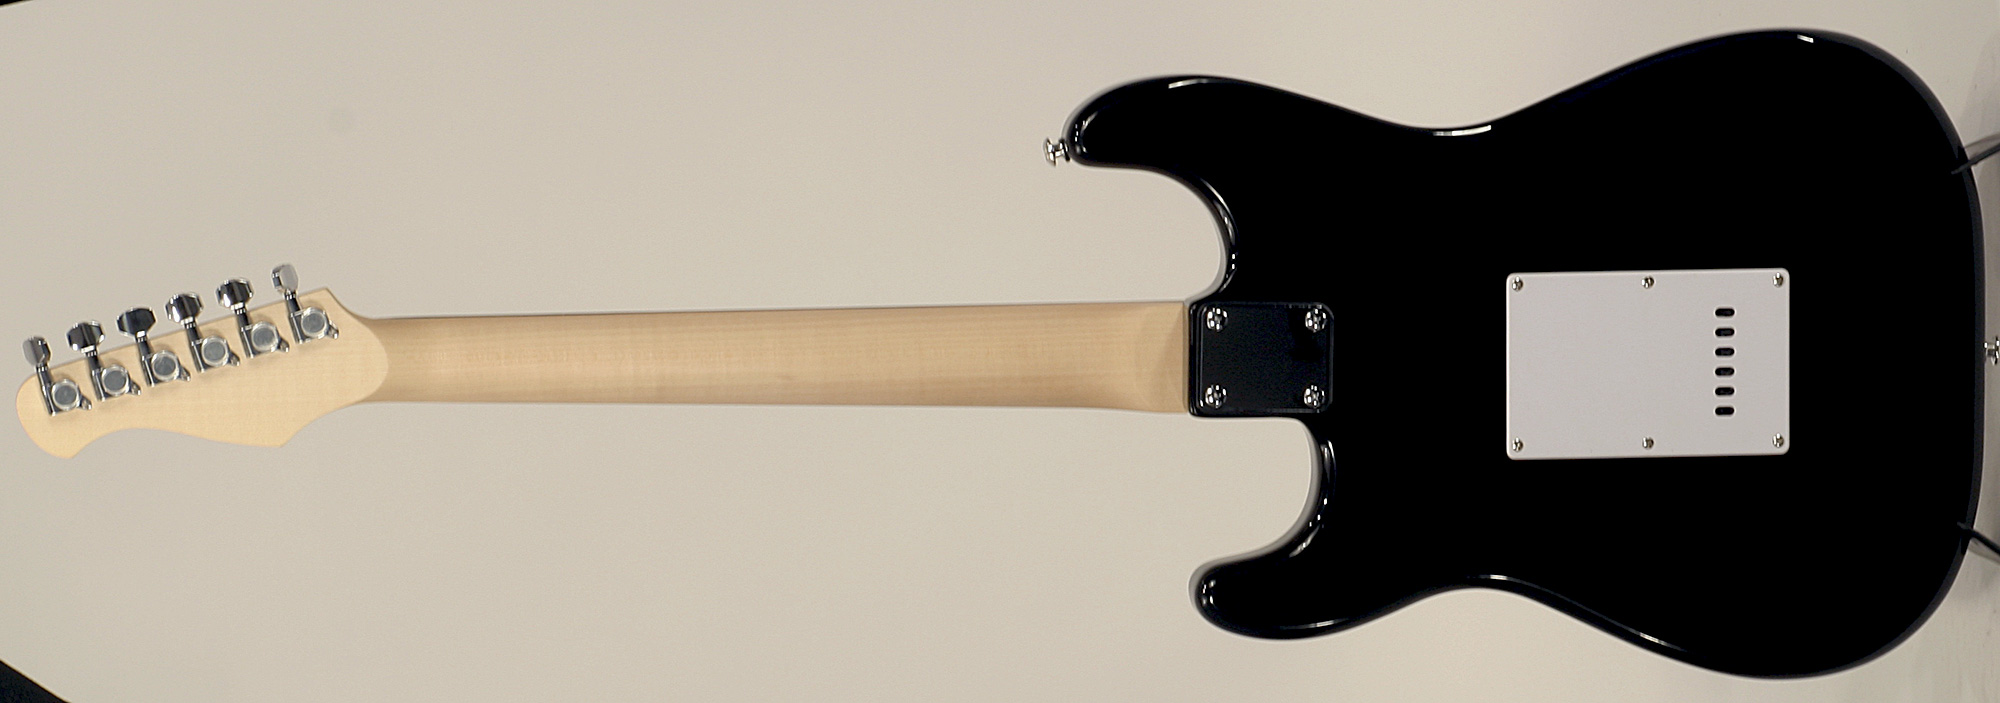 Eastone Str70-blk 3s Pur - Black - Str shape electric guitar - Variation 2